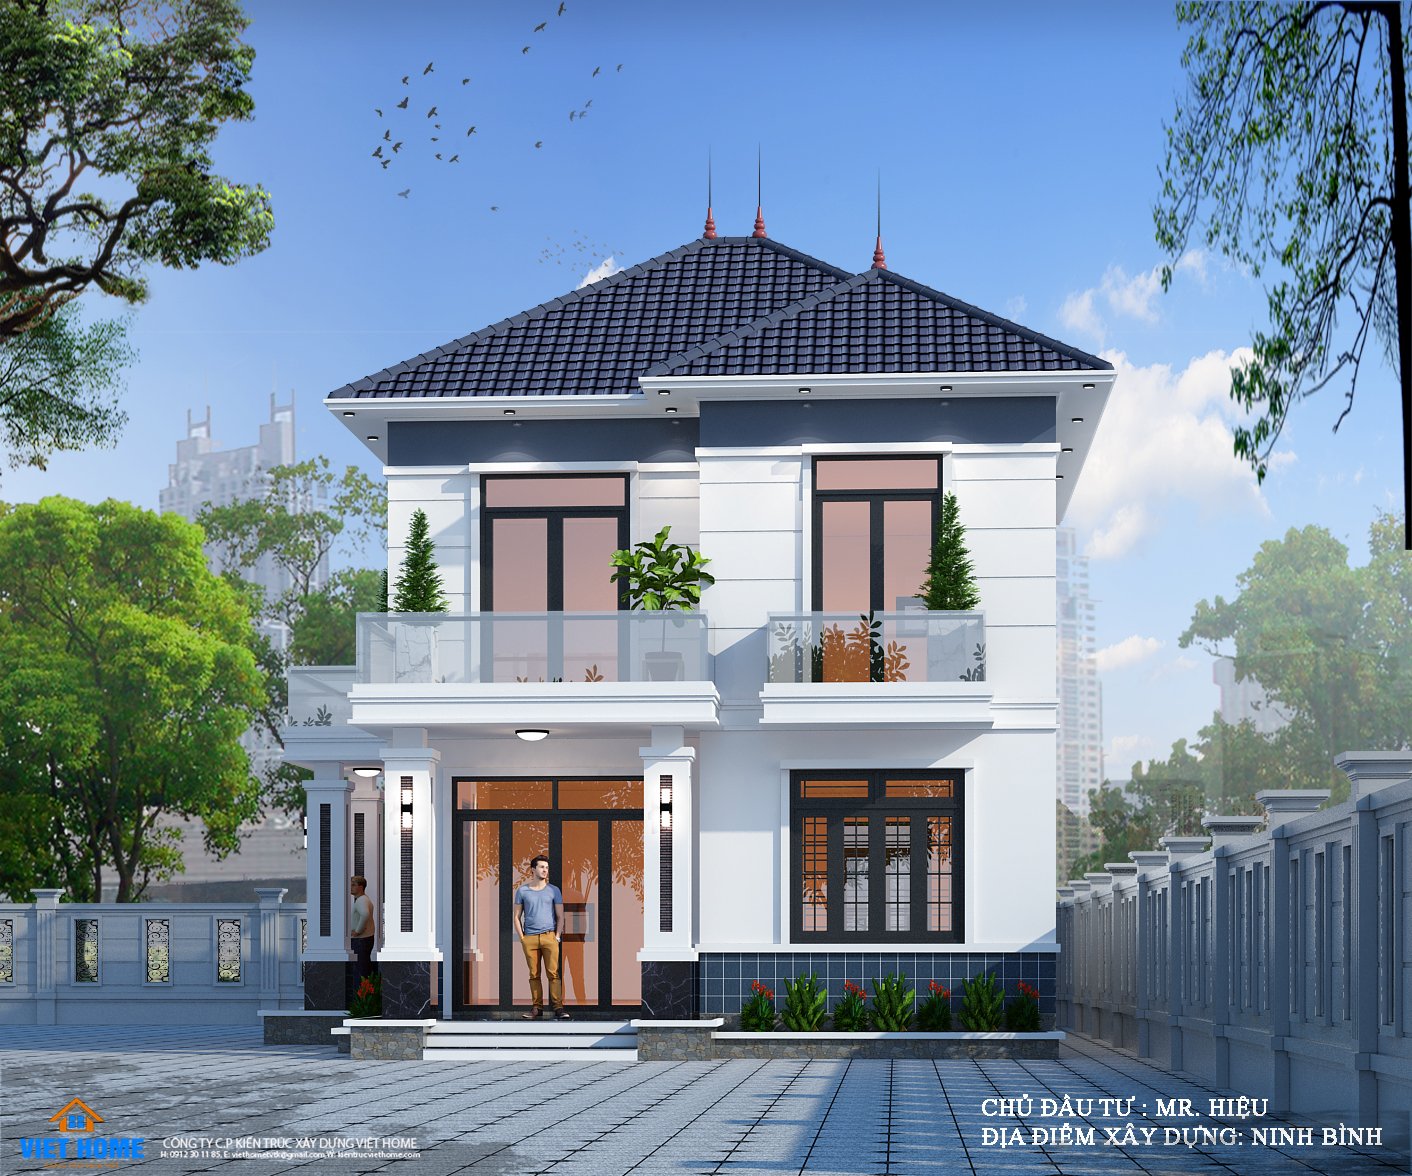 Mẫu nhà 2 tầng mái nhật đẹp và ấn tượng tại Ninh Bình - Chủ đầu tư: Anh  Hiệu CÔNG TY CỔ PHẦN KIẾN TRÚC XÂY DỰNG VIỆT HOME